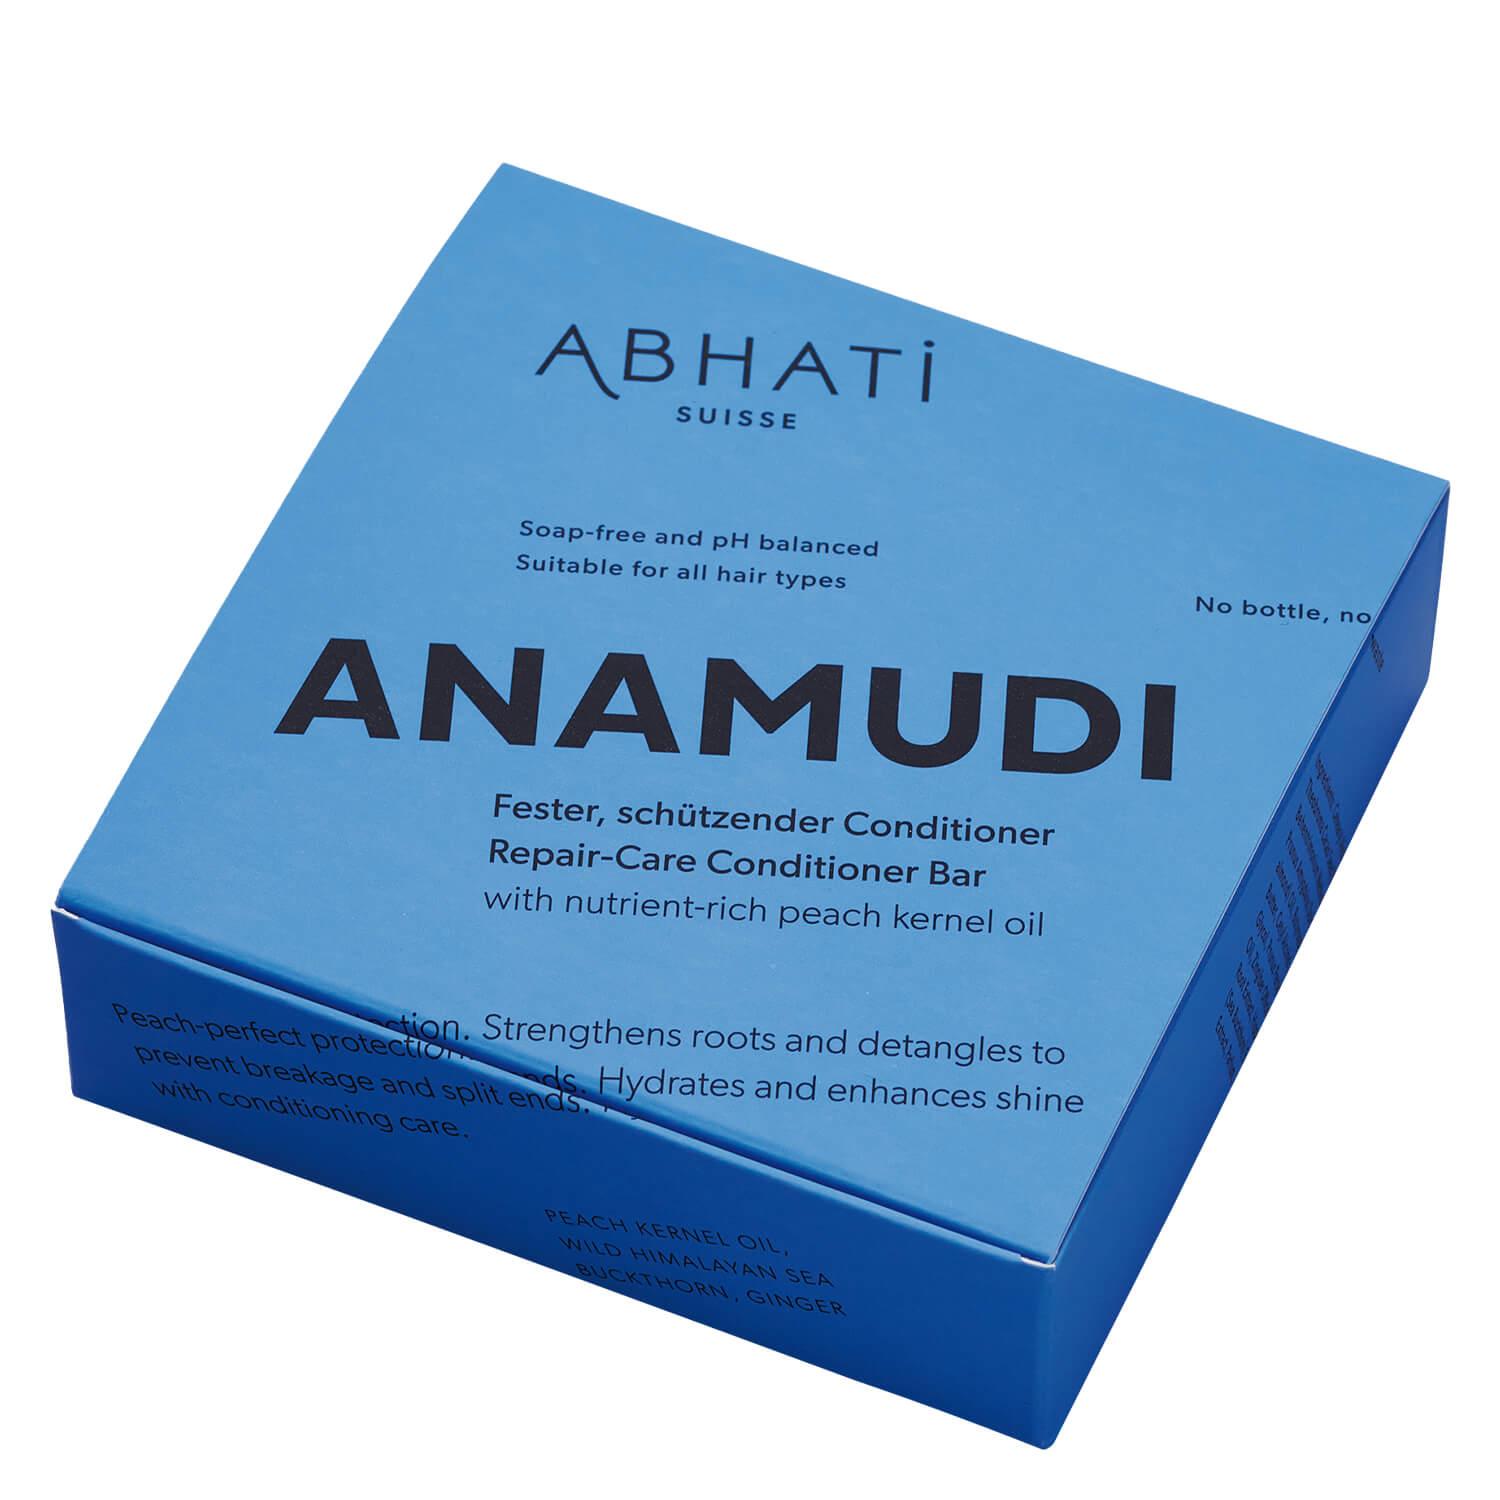 ABHATI Suisse - Anamudi Conditioner Bar